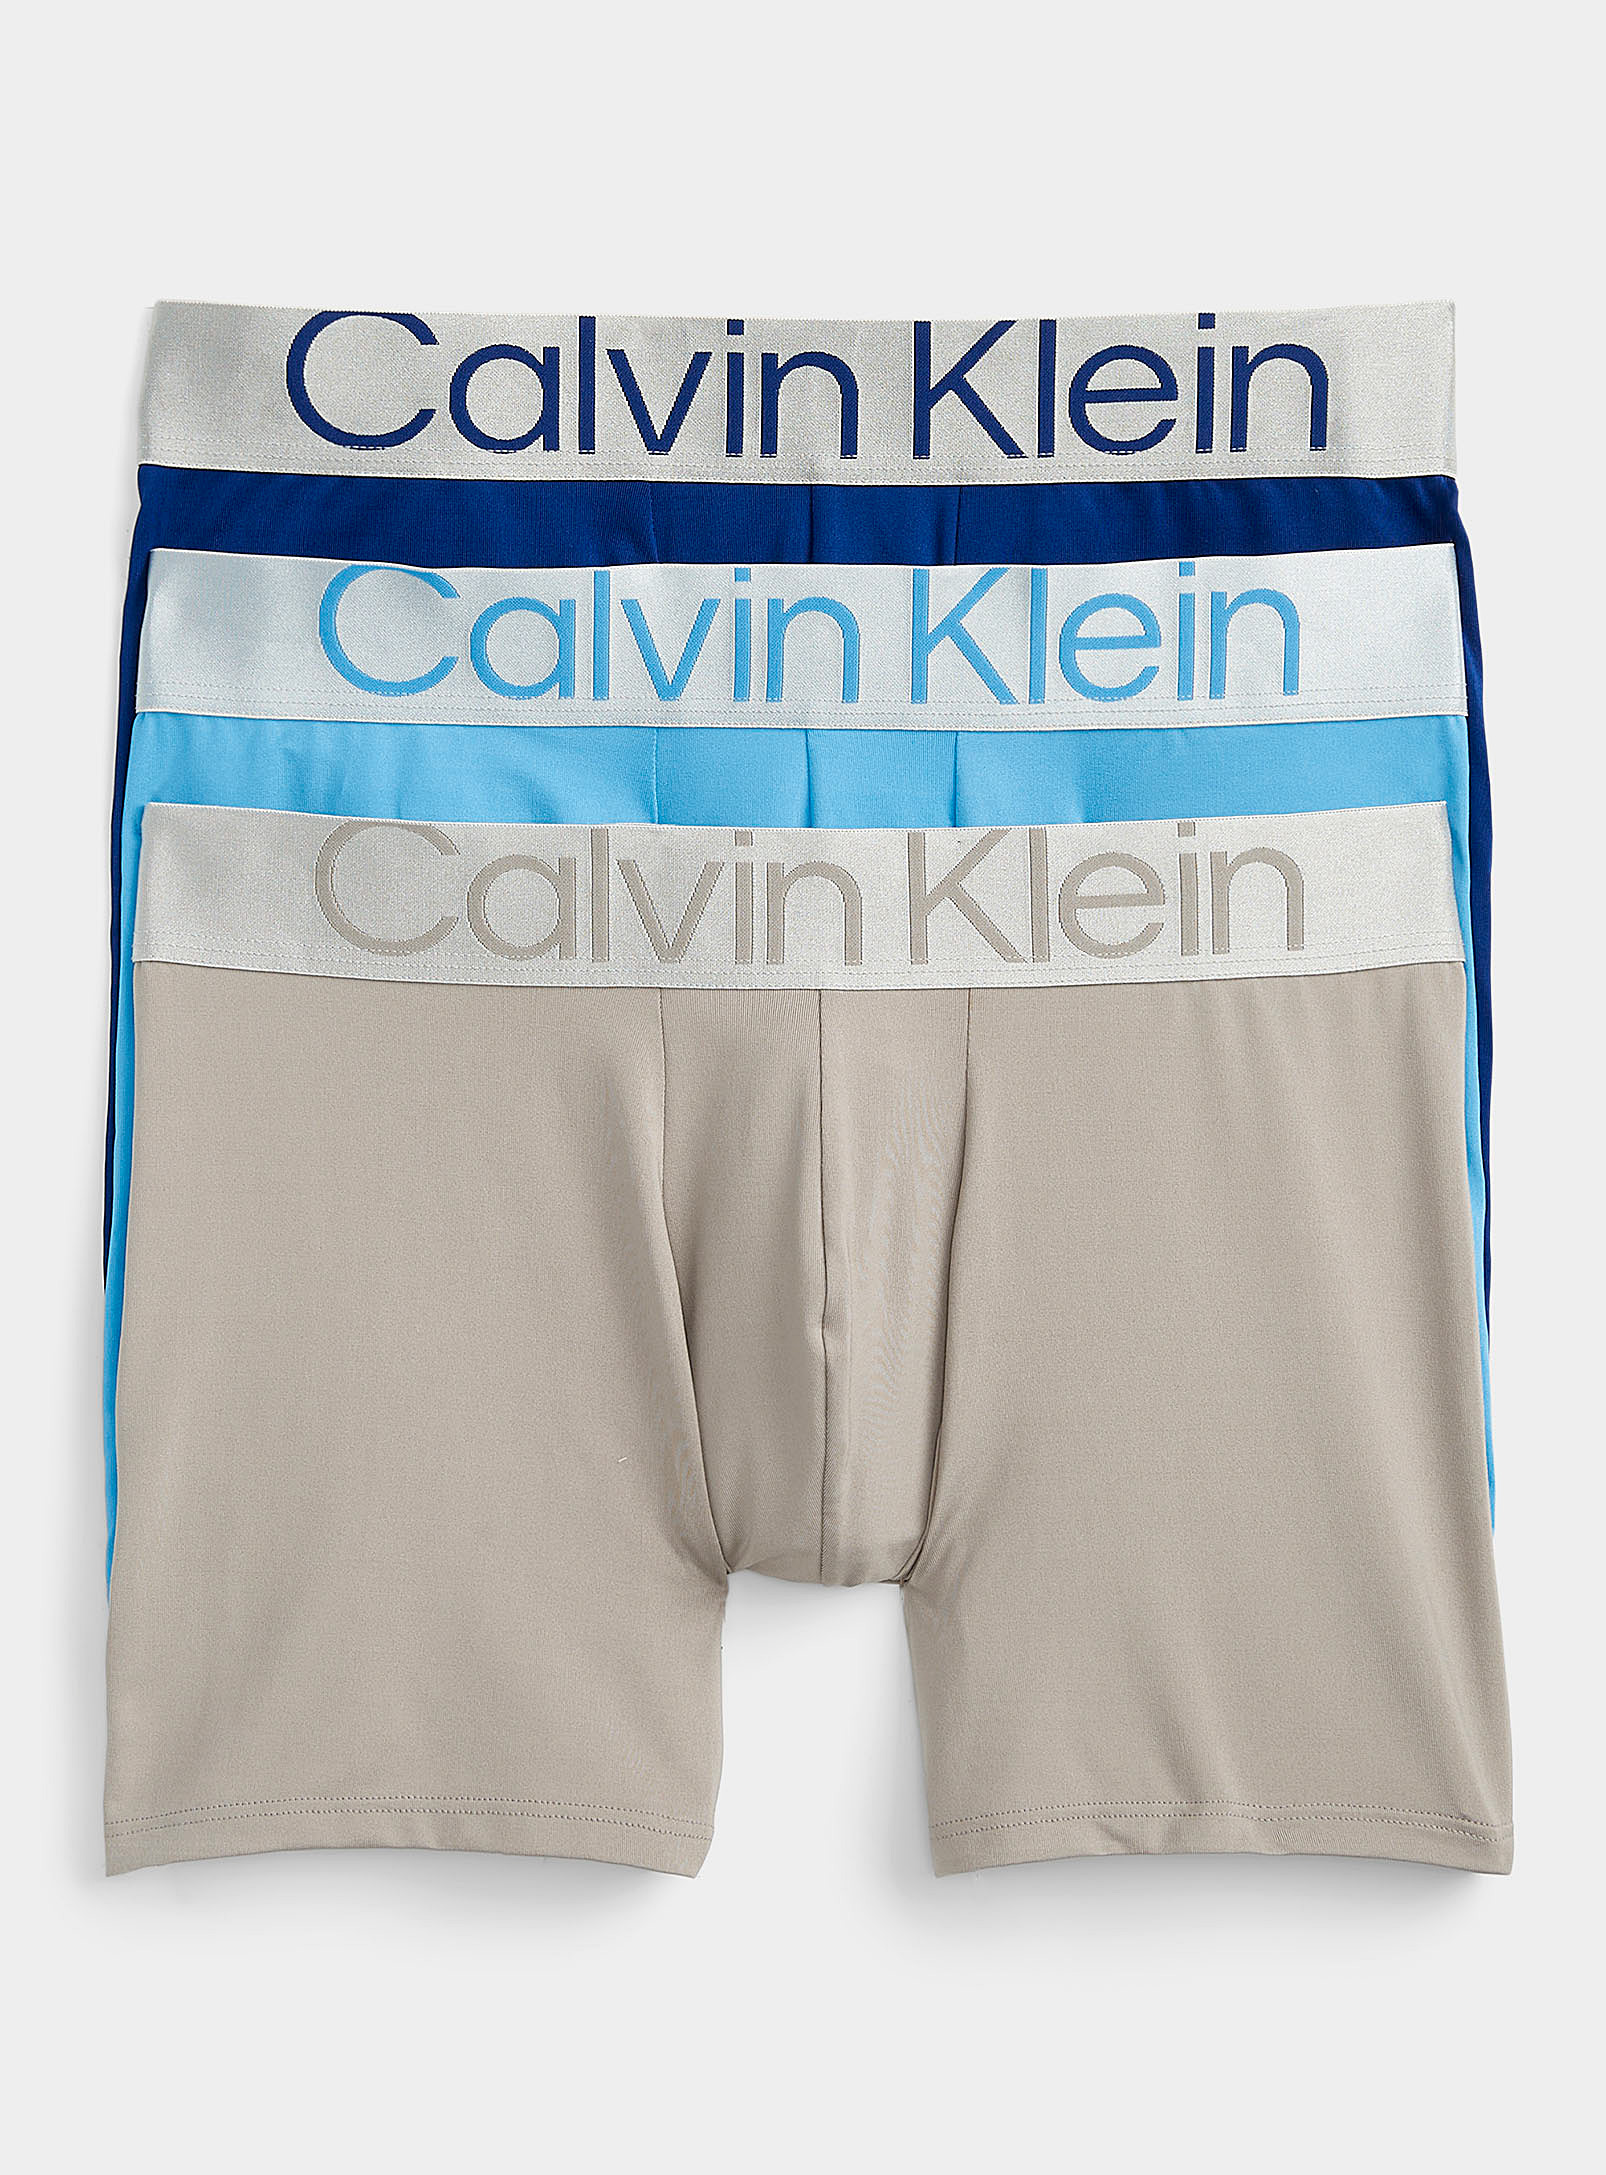 Calvin Klein Reconsidered Steel Silver-waist Boxer Briefs 3-pack